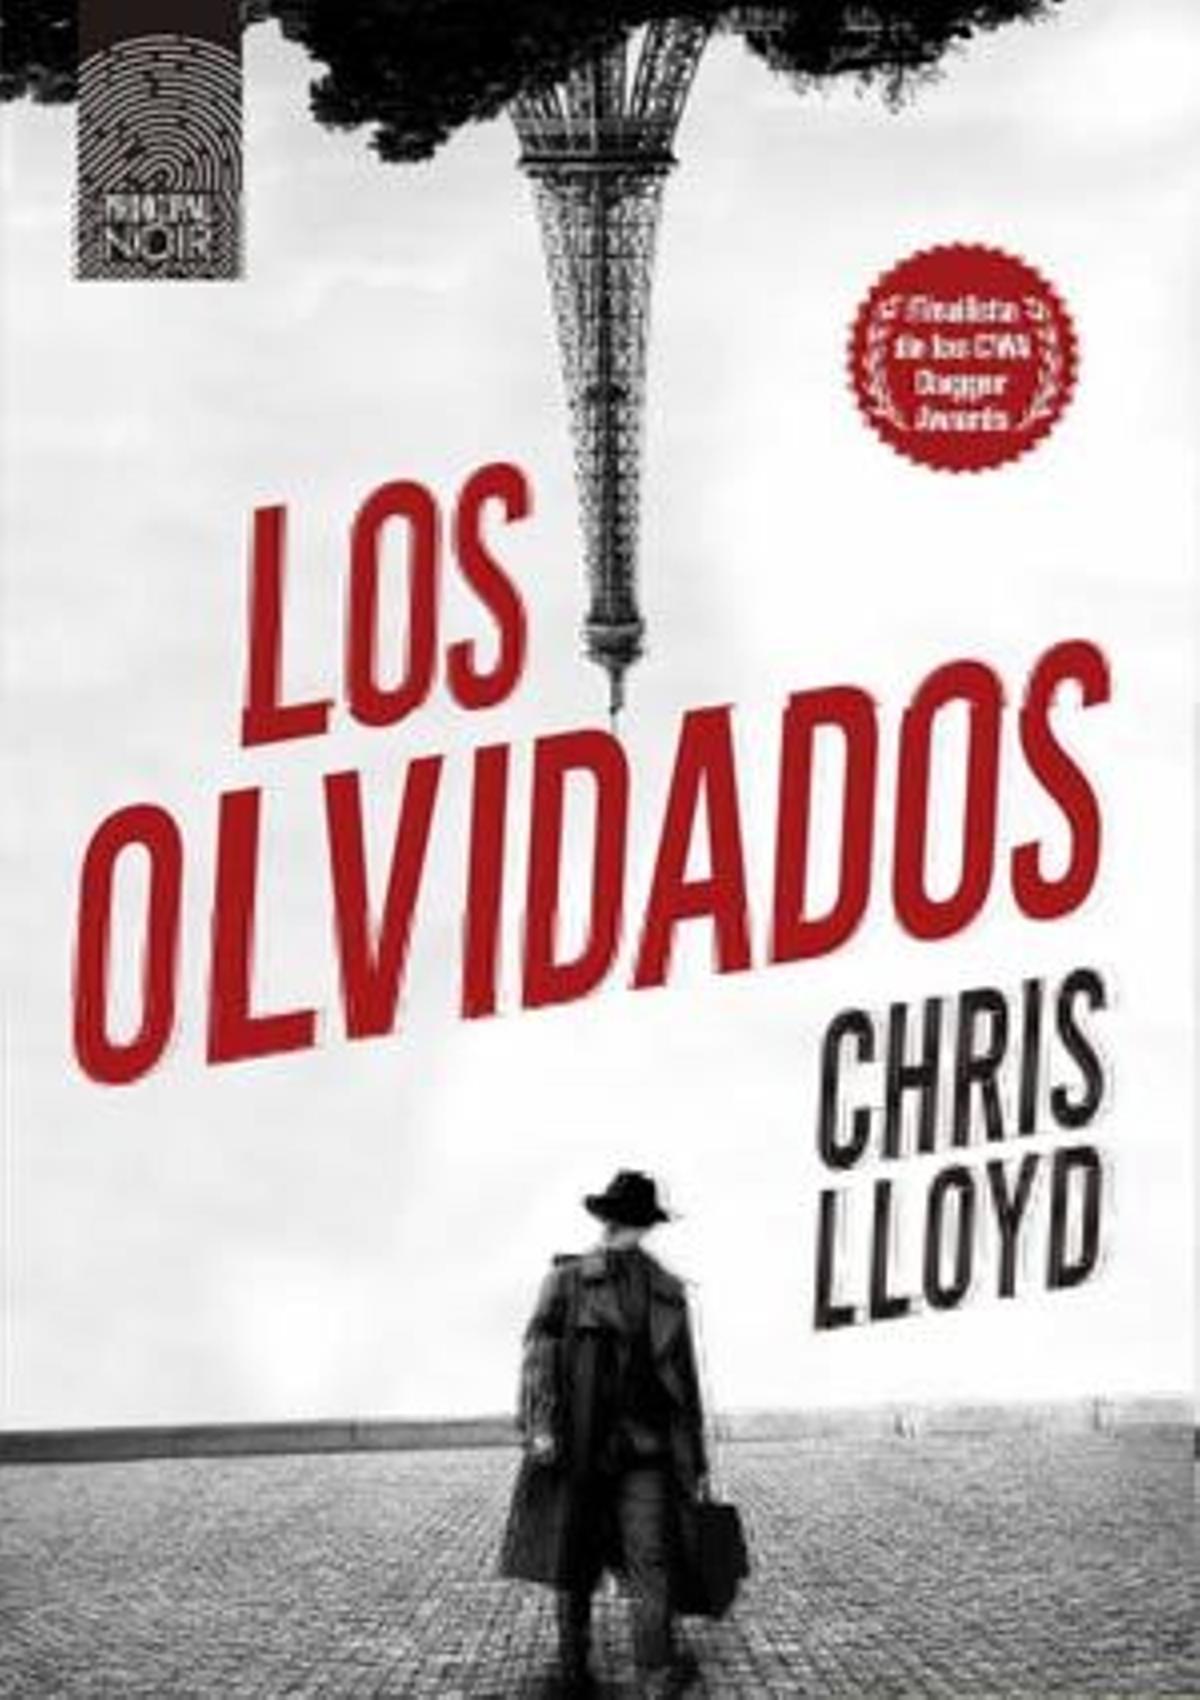 Chris Lloyd (Principal de los libros. 19,90 €).